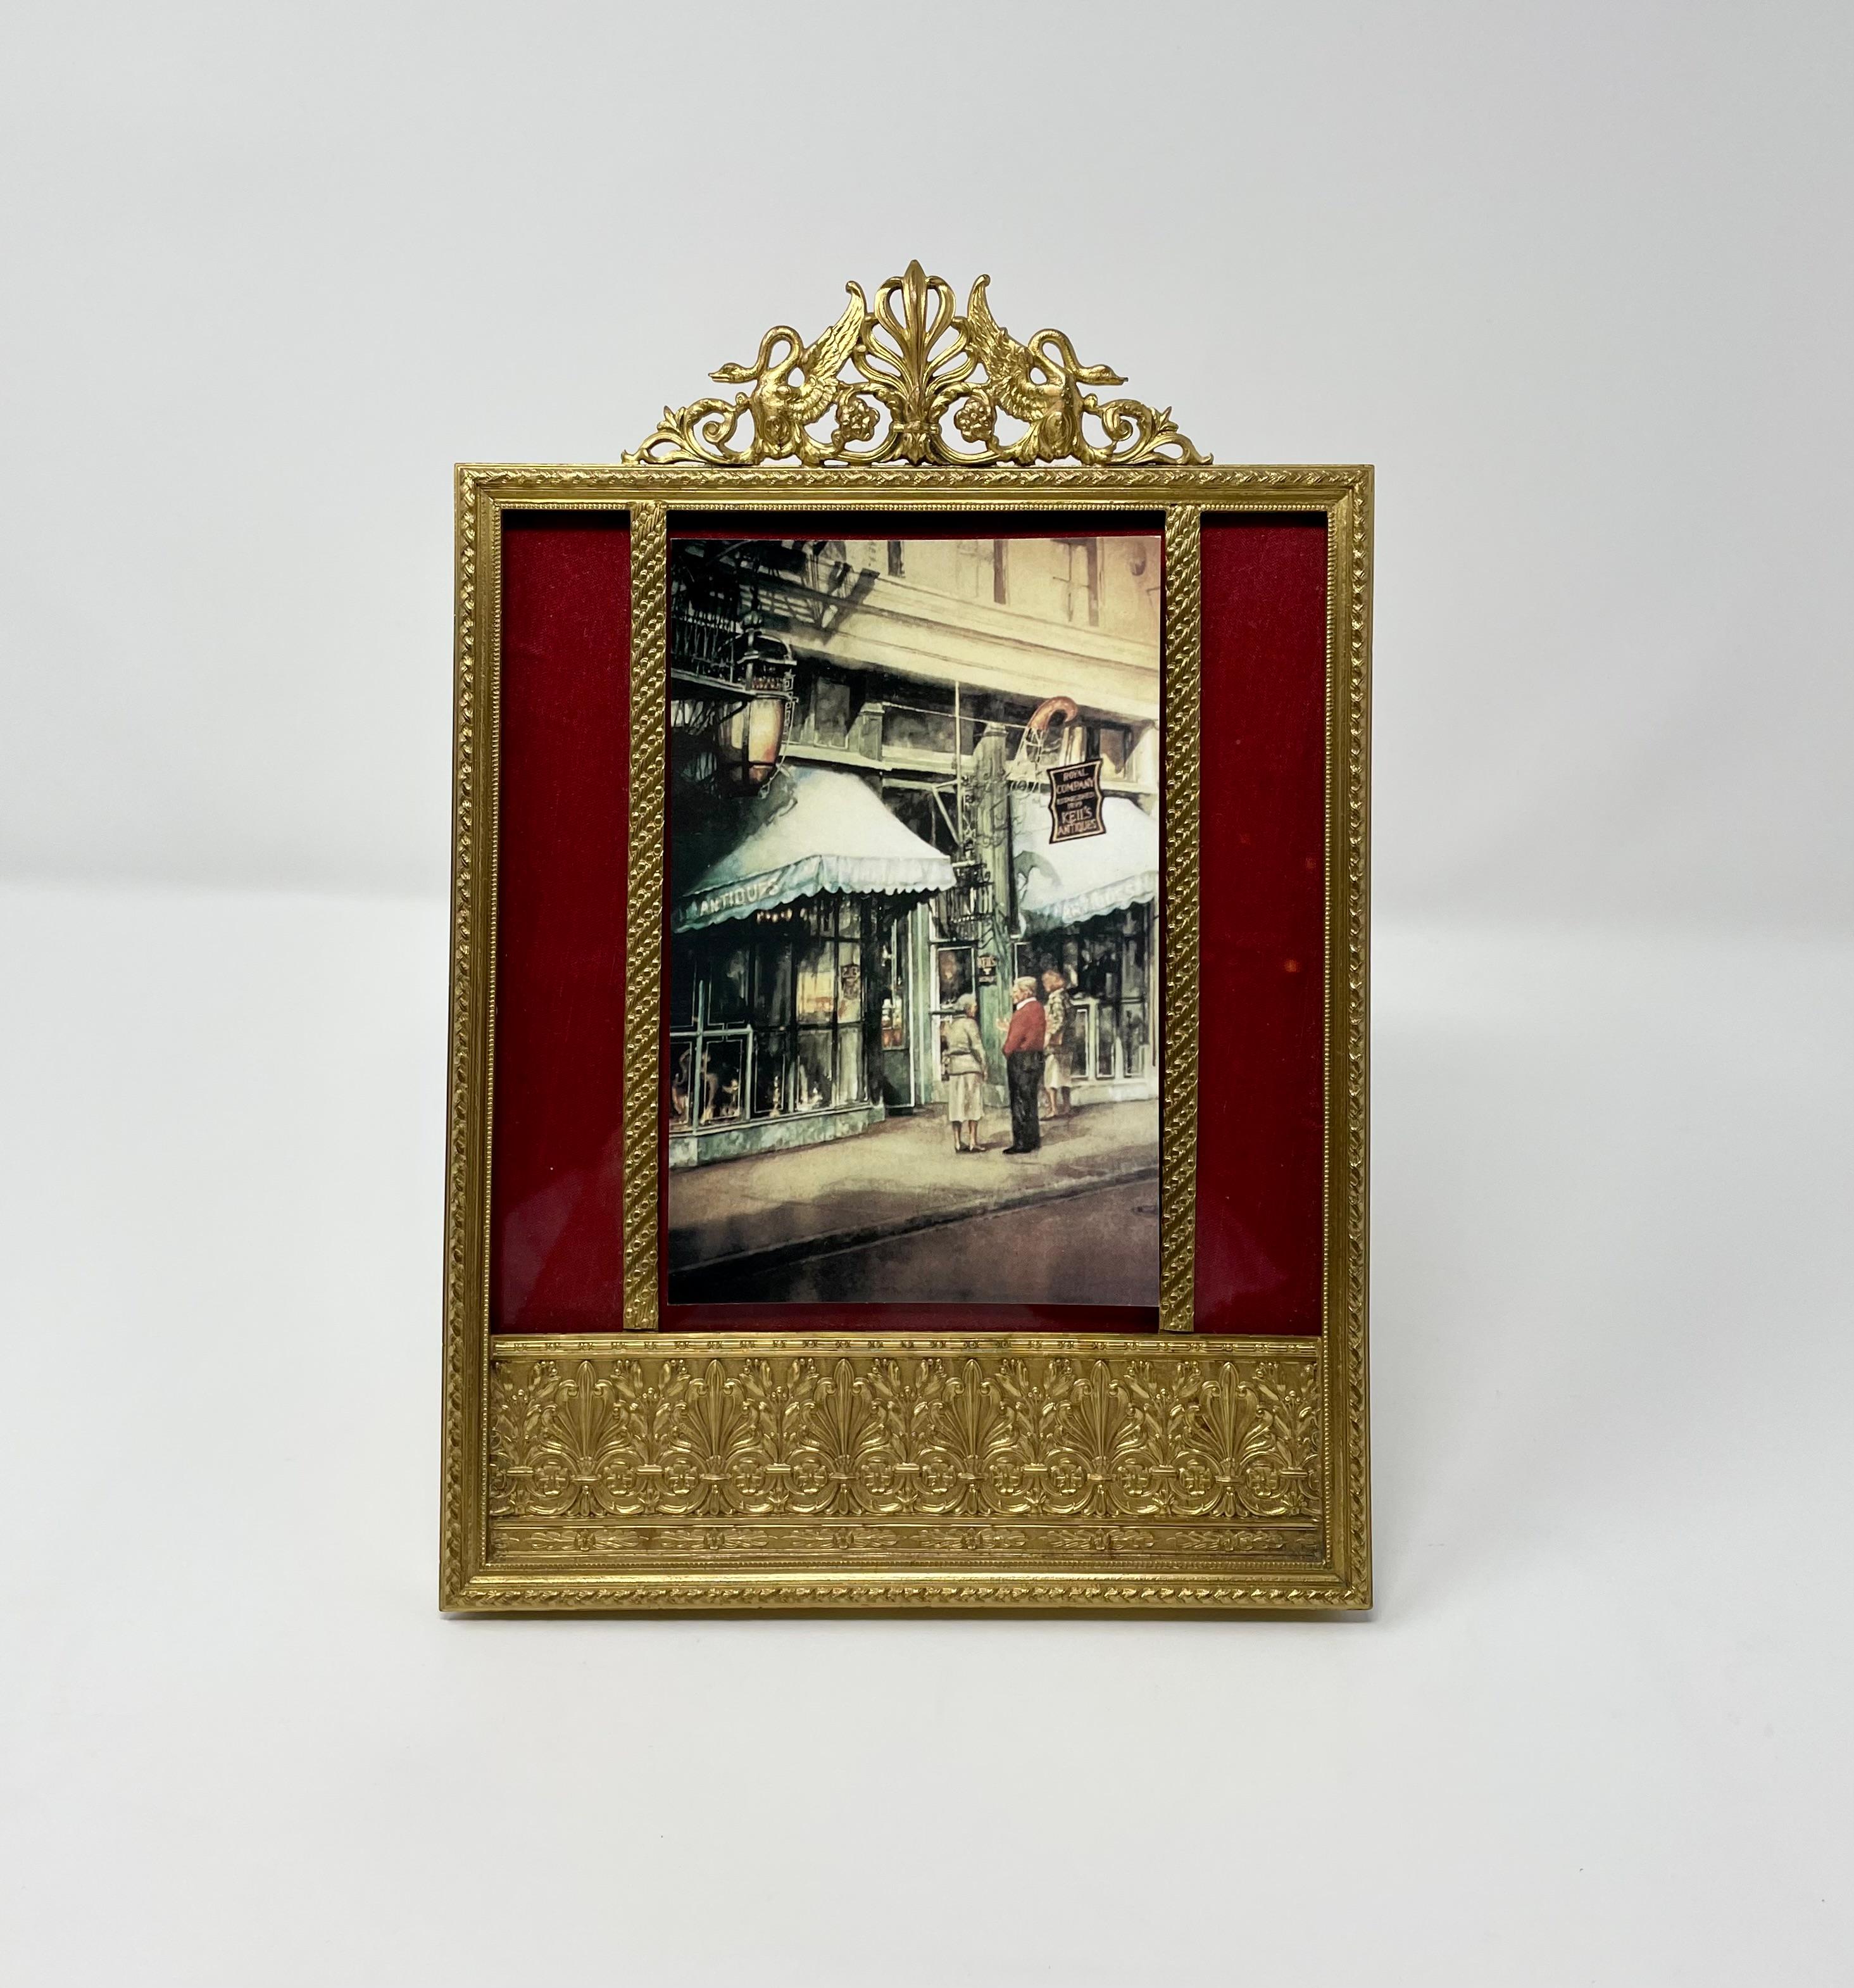 Antique French Empire style ormolu frame, circa 1900.